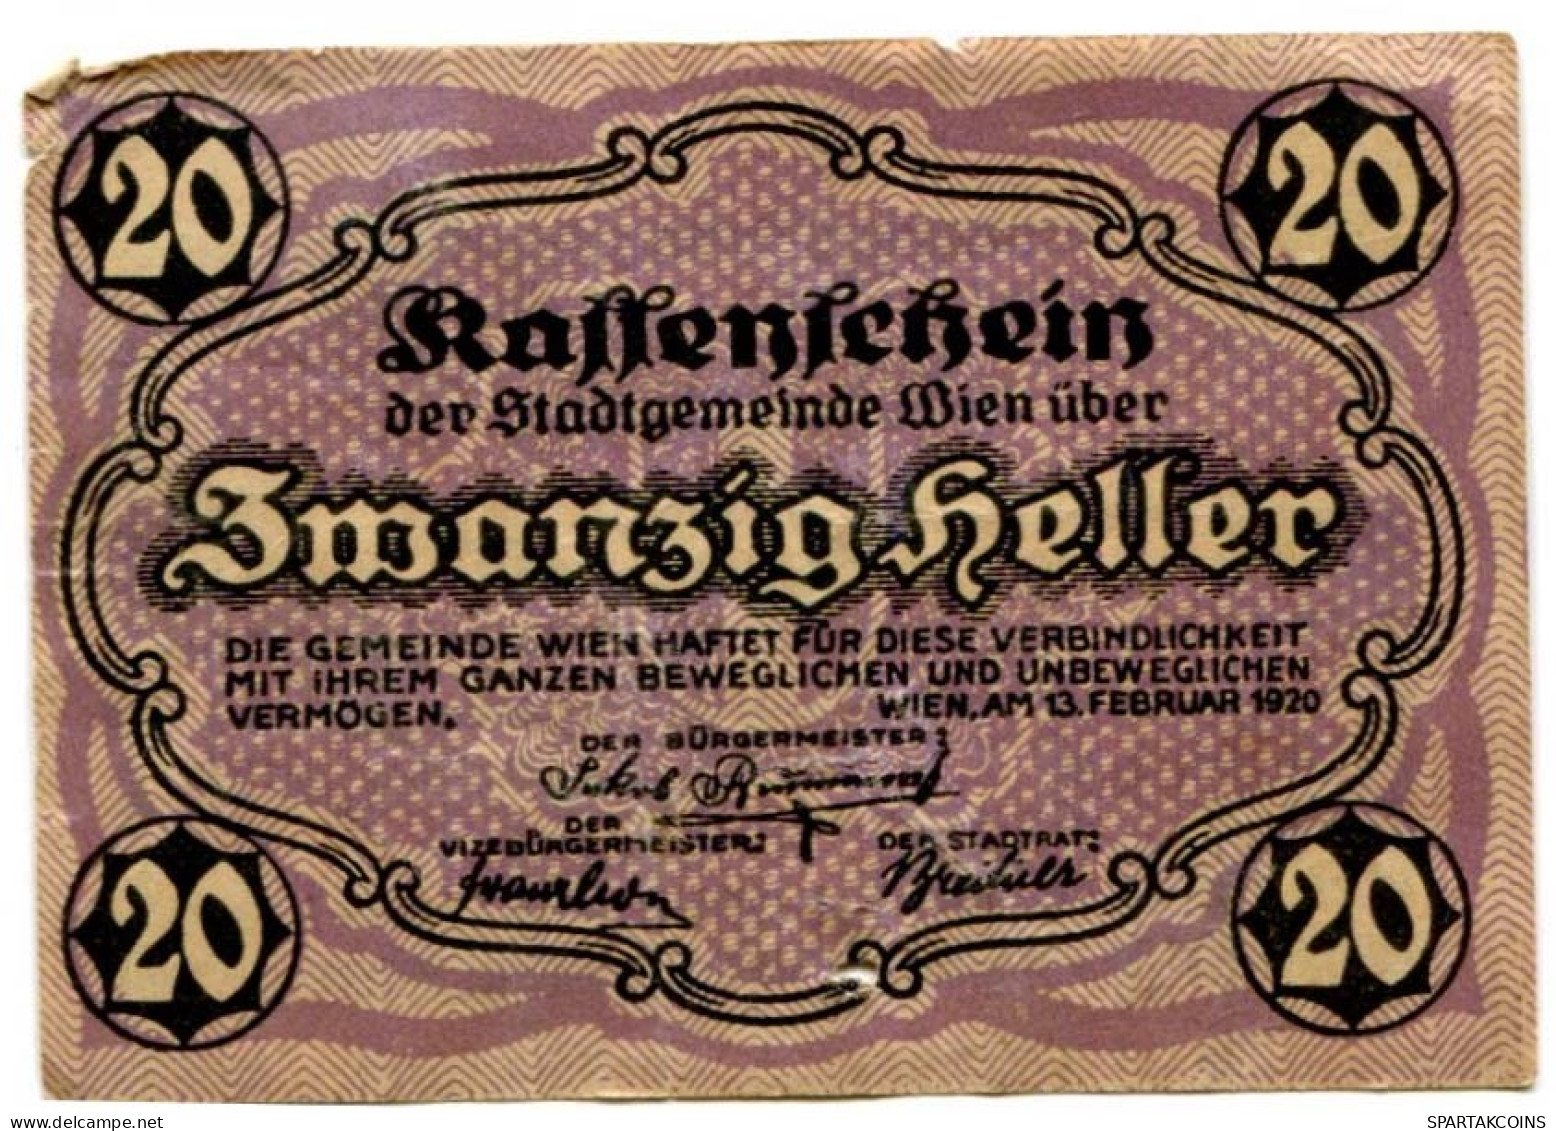 20 HELLER 1920 Stadt Wien Österreich Notgeld Papiergeld Banknote #PL583 - [11] Local Banknote Issues